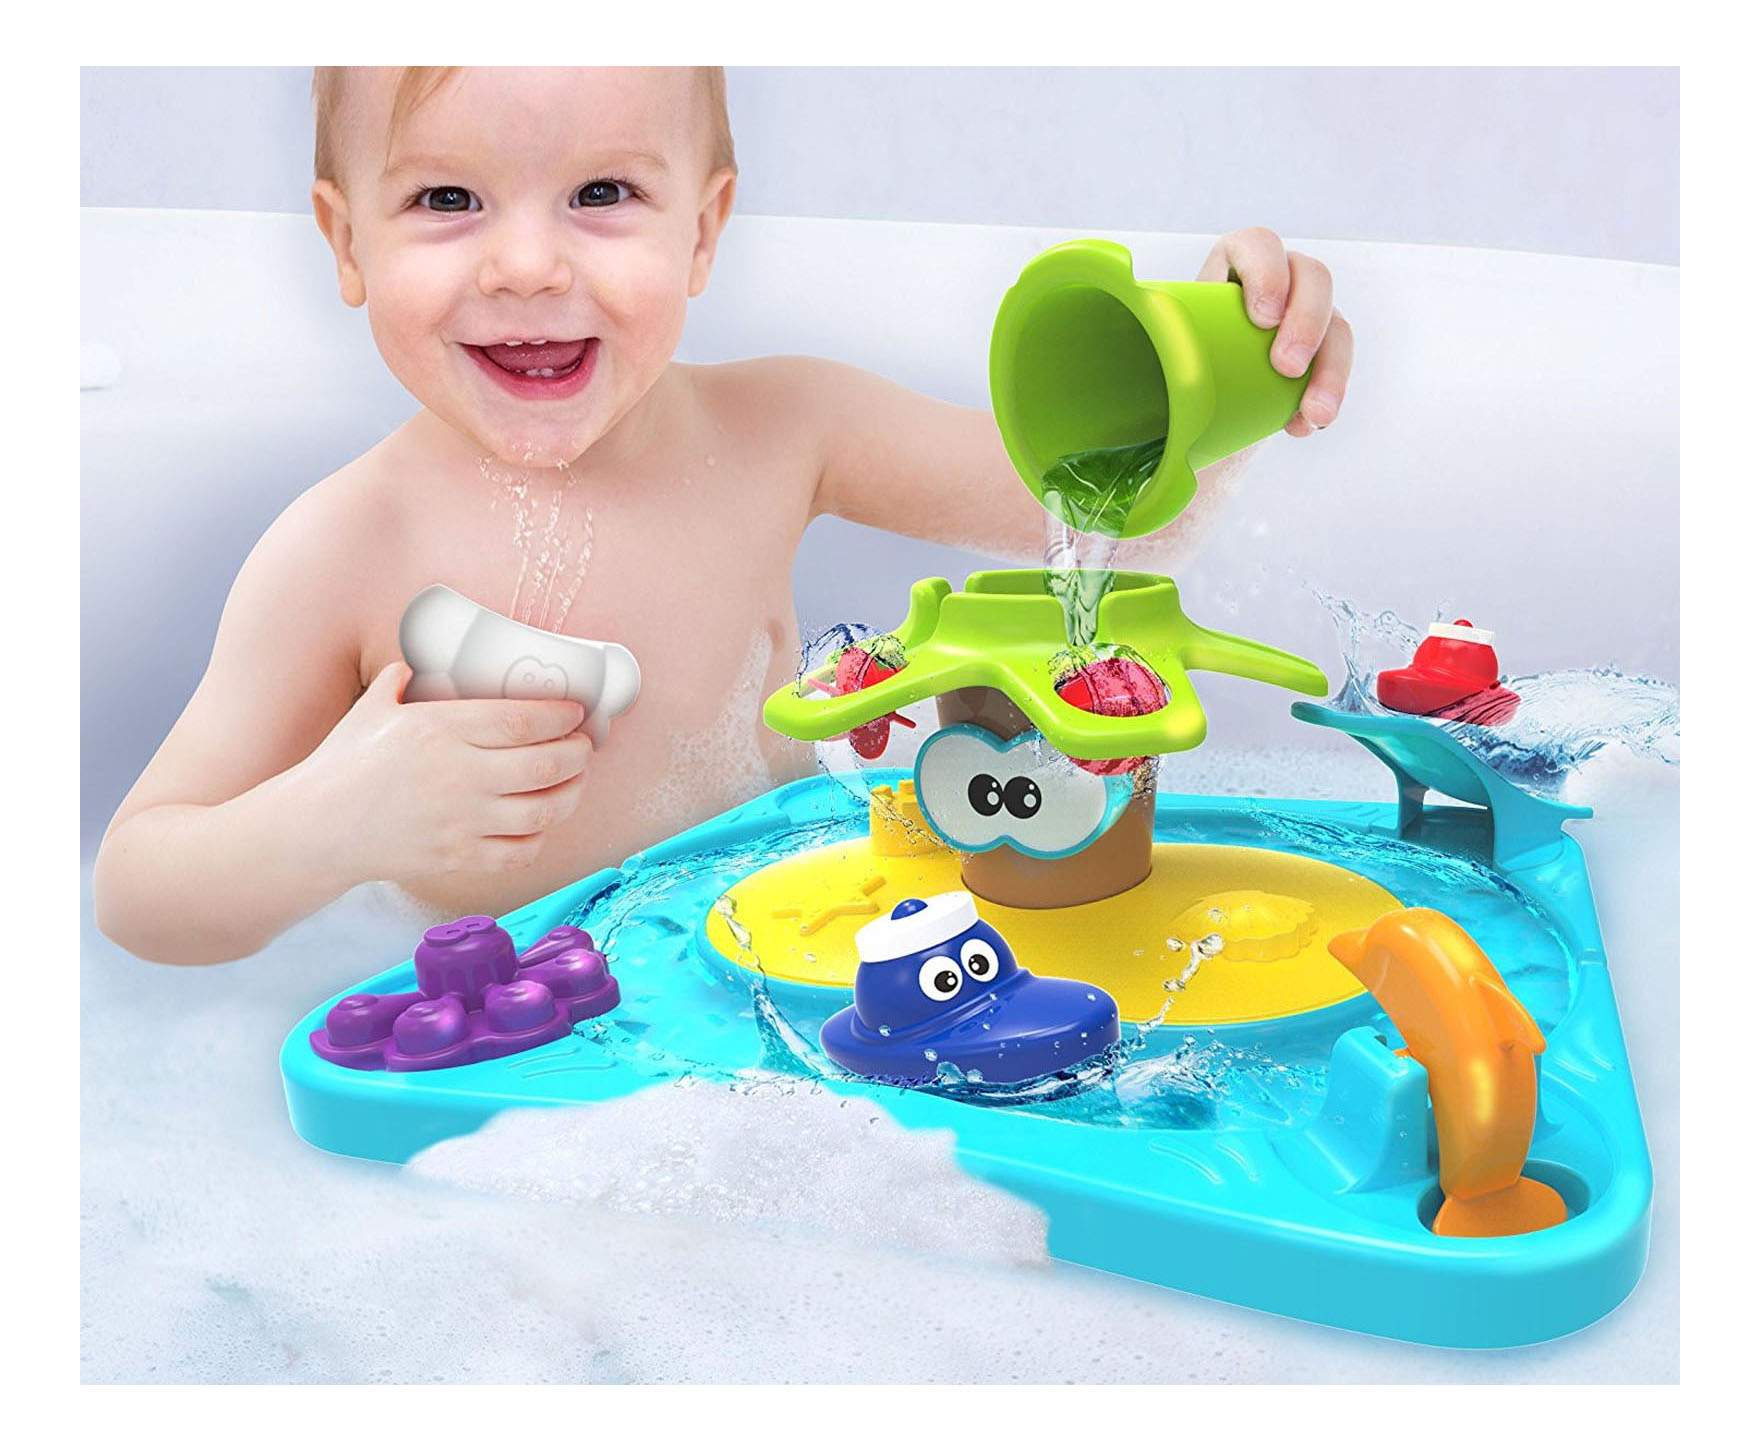 Набор игрушек для ванной. Детская игрушка для ванны. Игрушки для купания малышей. Интересные игрушки для ванной. Игрушки в ванную для детей.